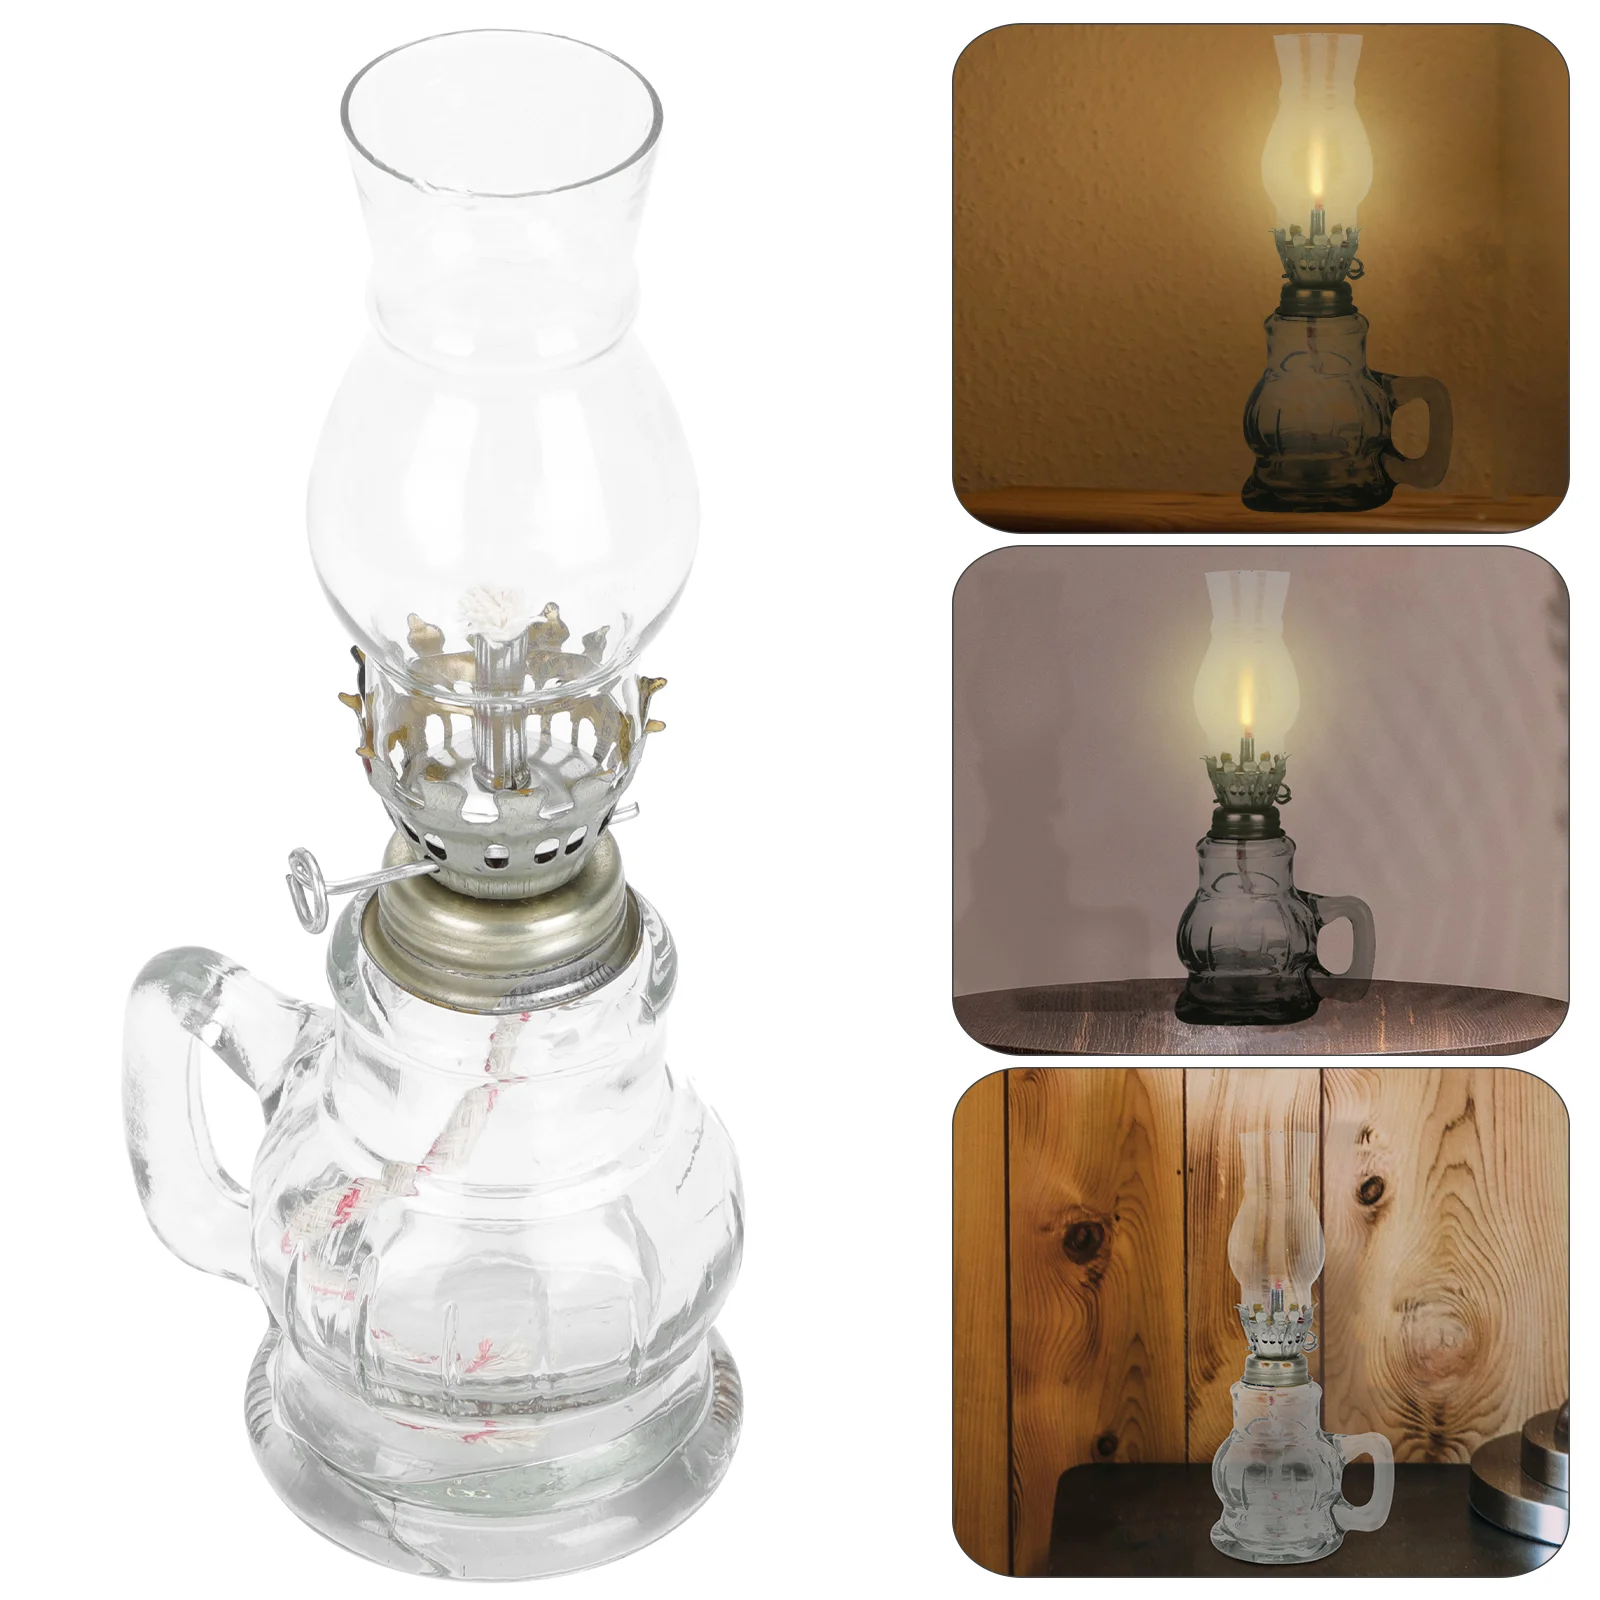 

Lamp Oil Kerosene Lamps Lantern Indoor Use Vintage Retro Lanterns Decor Chamber Indoors Uk Globes Lighting Home Light Cover